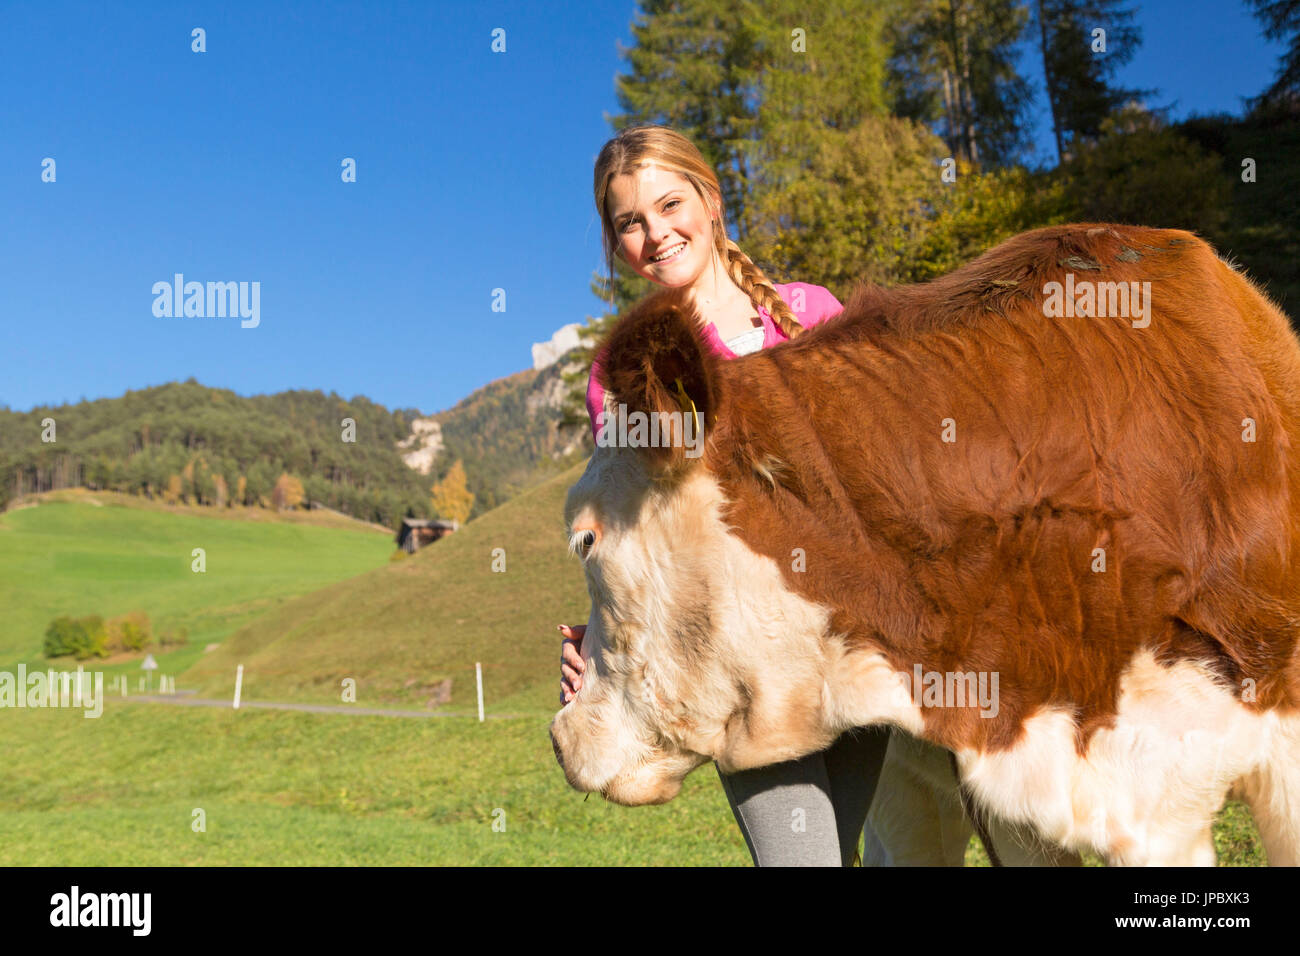 Fröhliches junges Mädchen streichelt eine kleine Kuh. Val di Funes, Trentino Alto Adige, Italien. Stockfoto